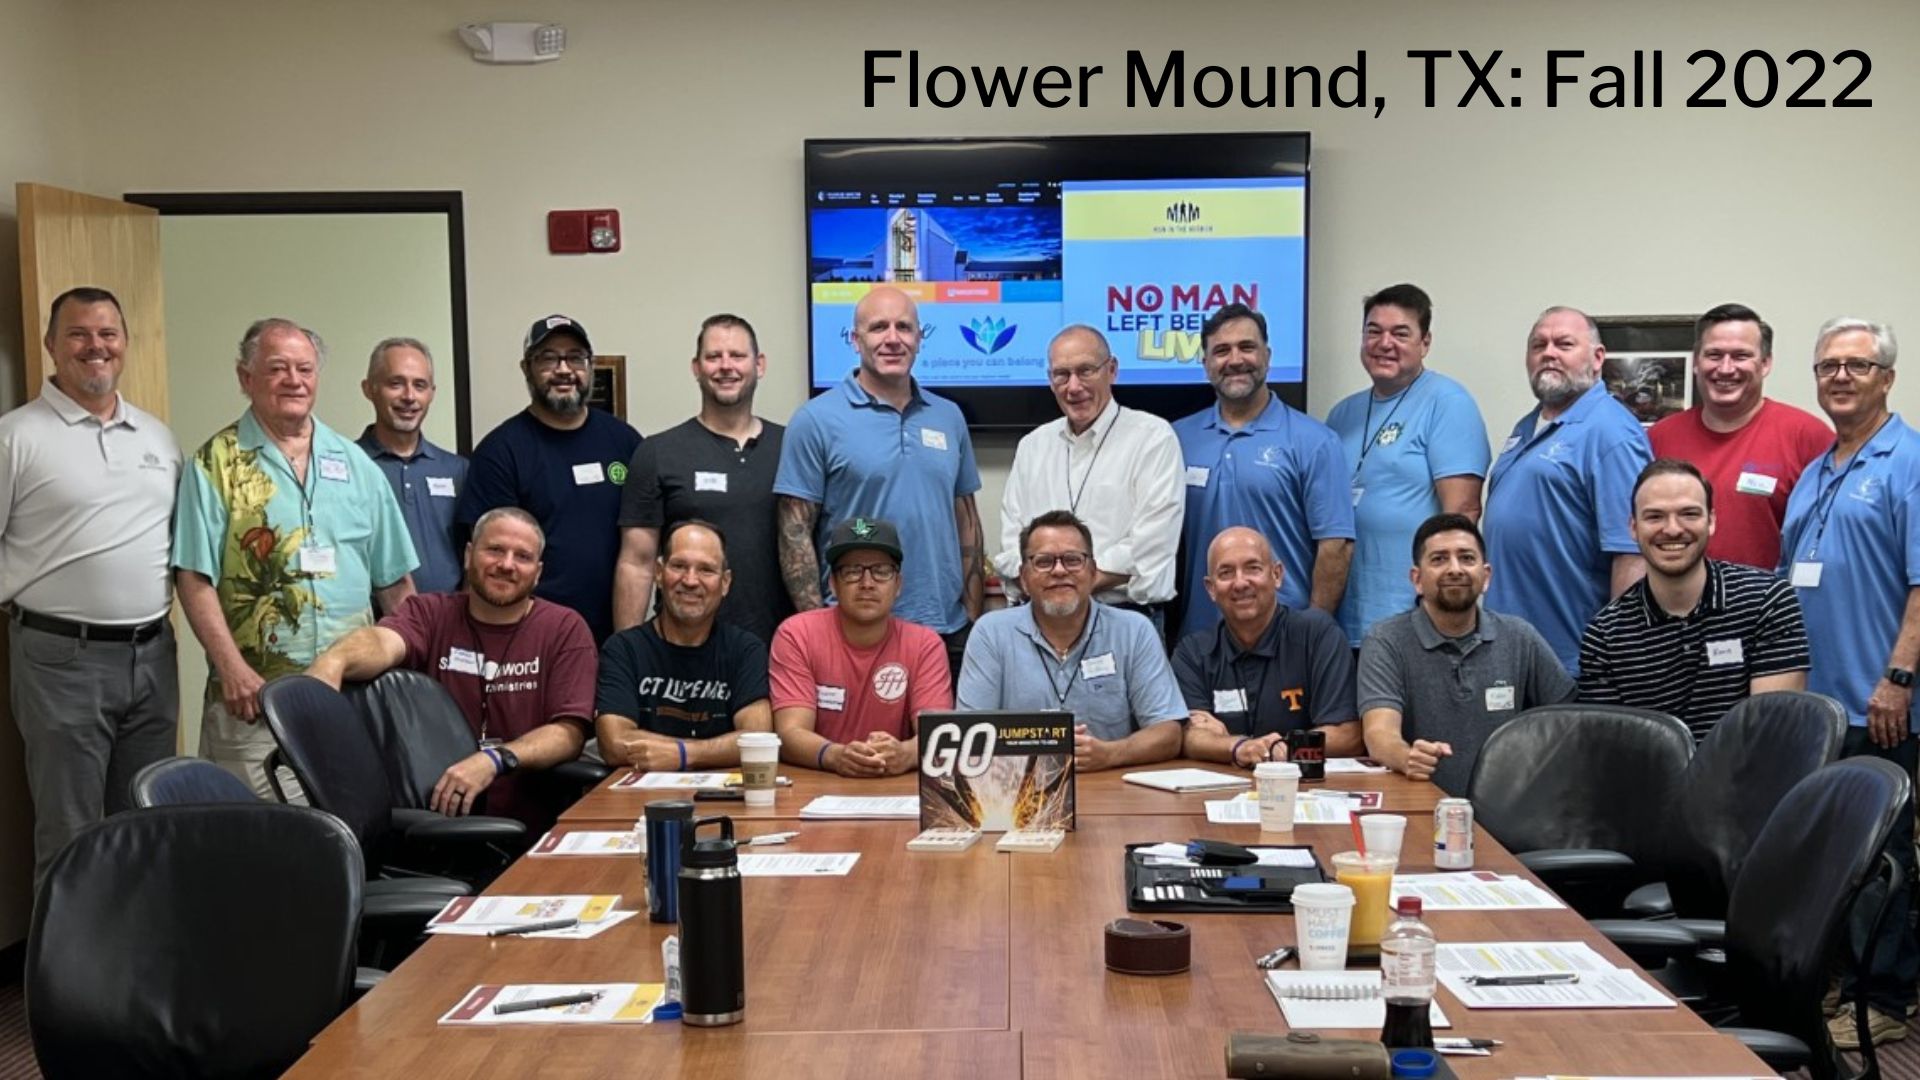 No Man Left Behind group in Flower Mound, TX